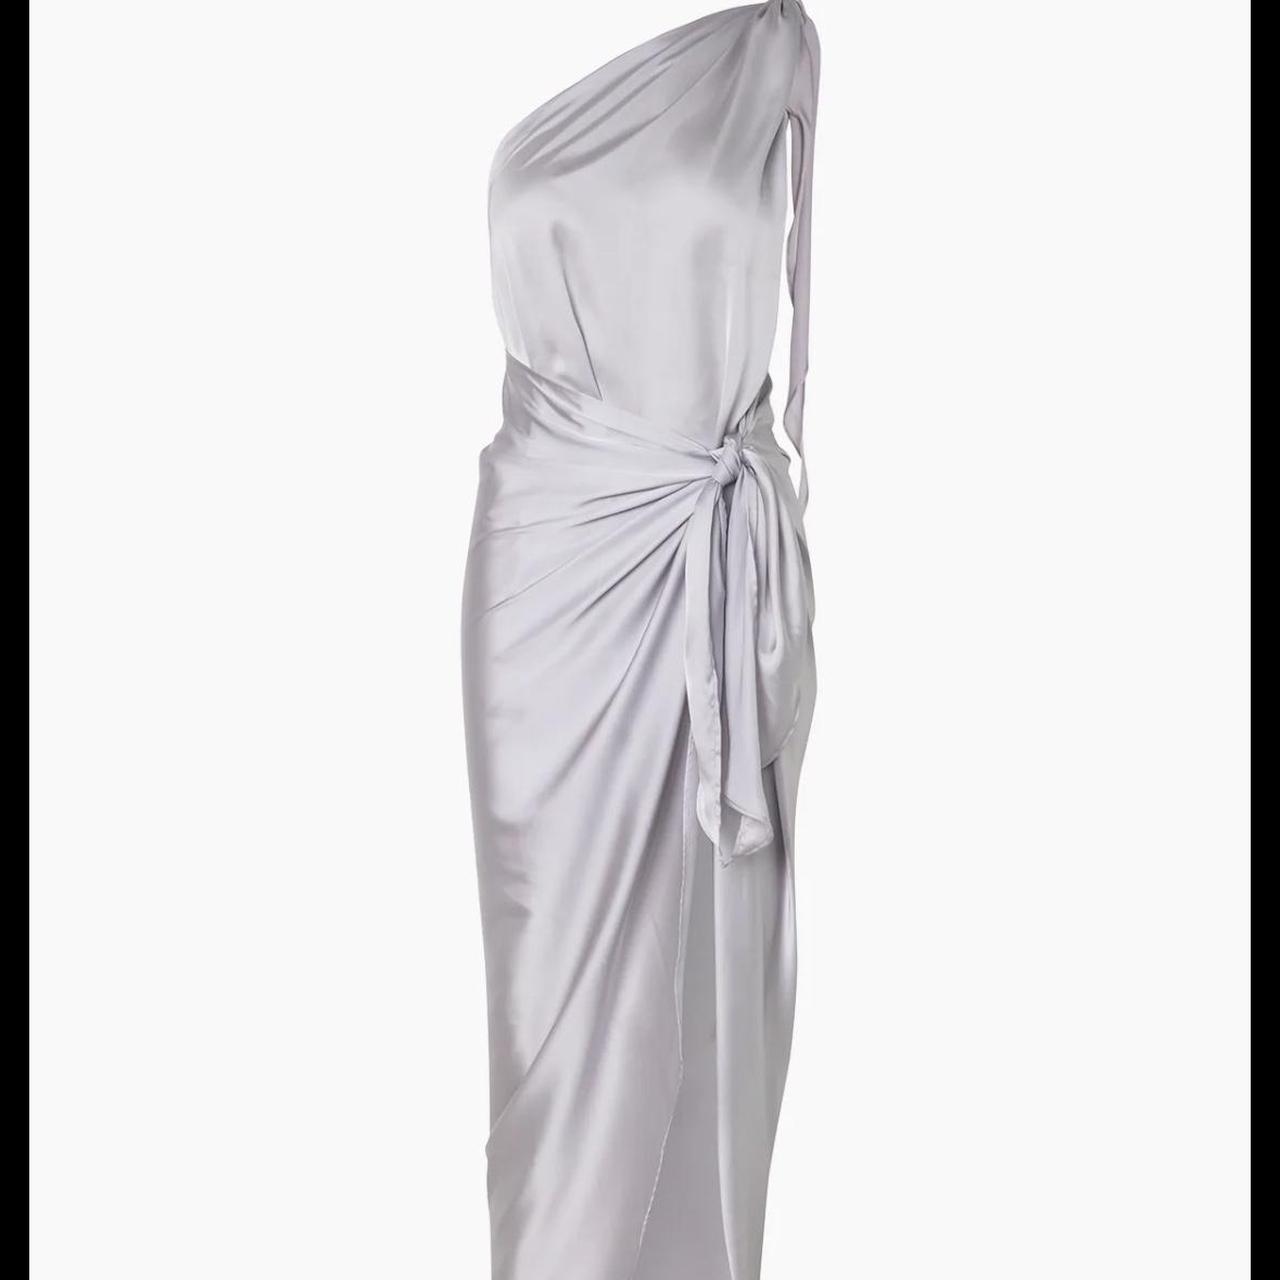 Baobab Women's Silver Dress (3)